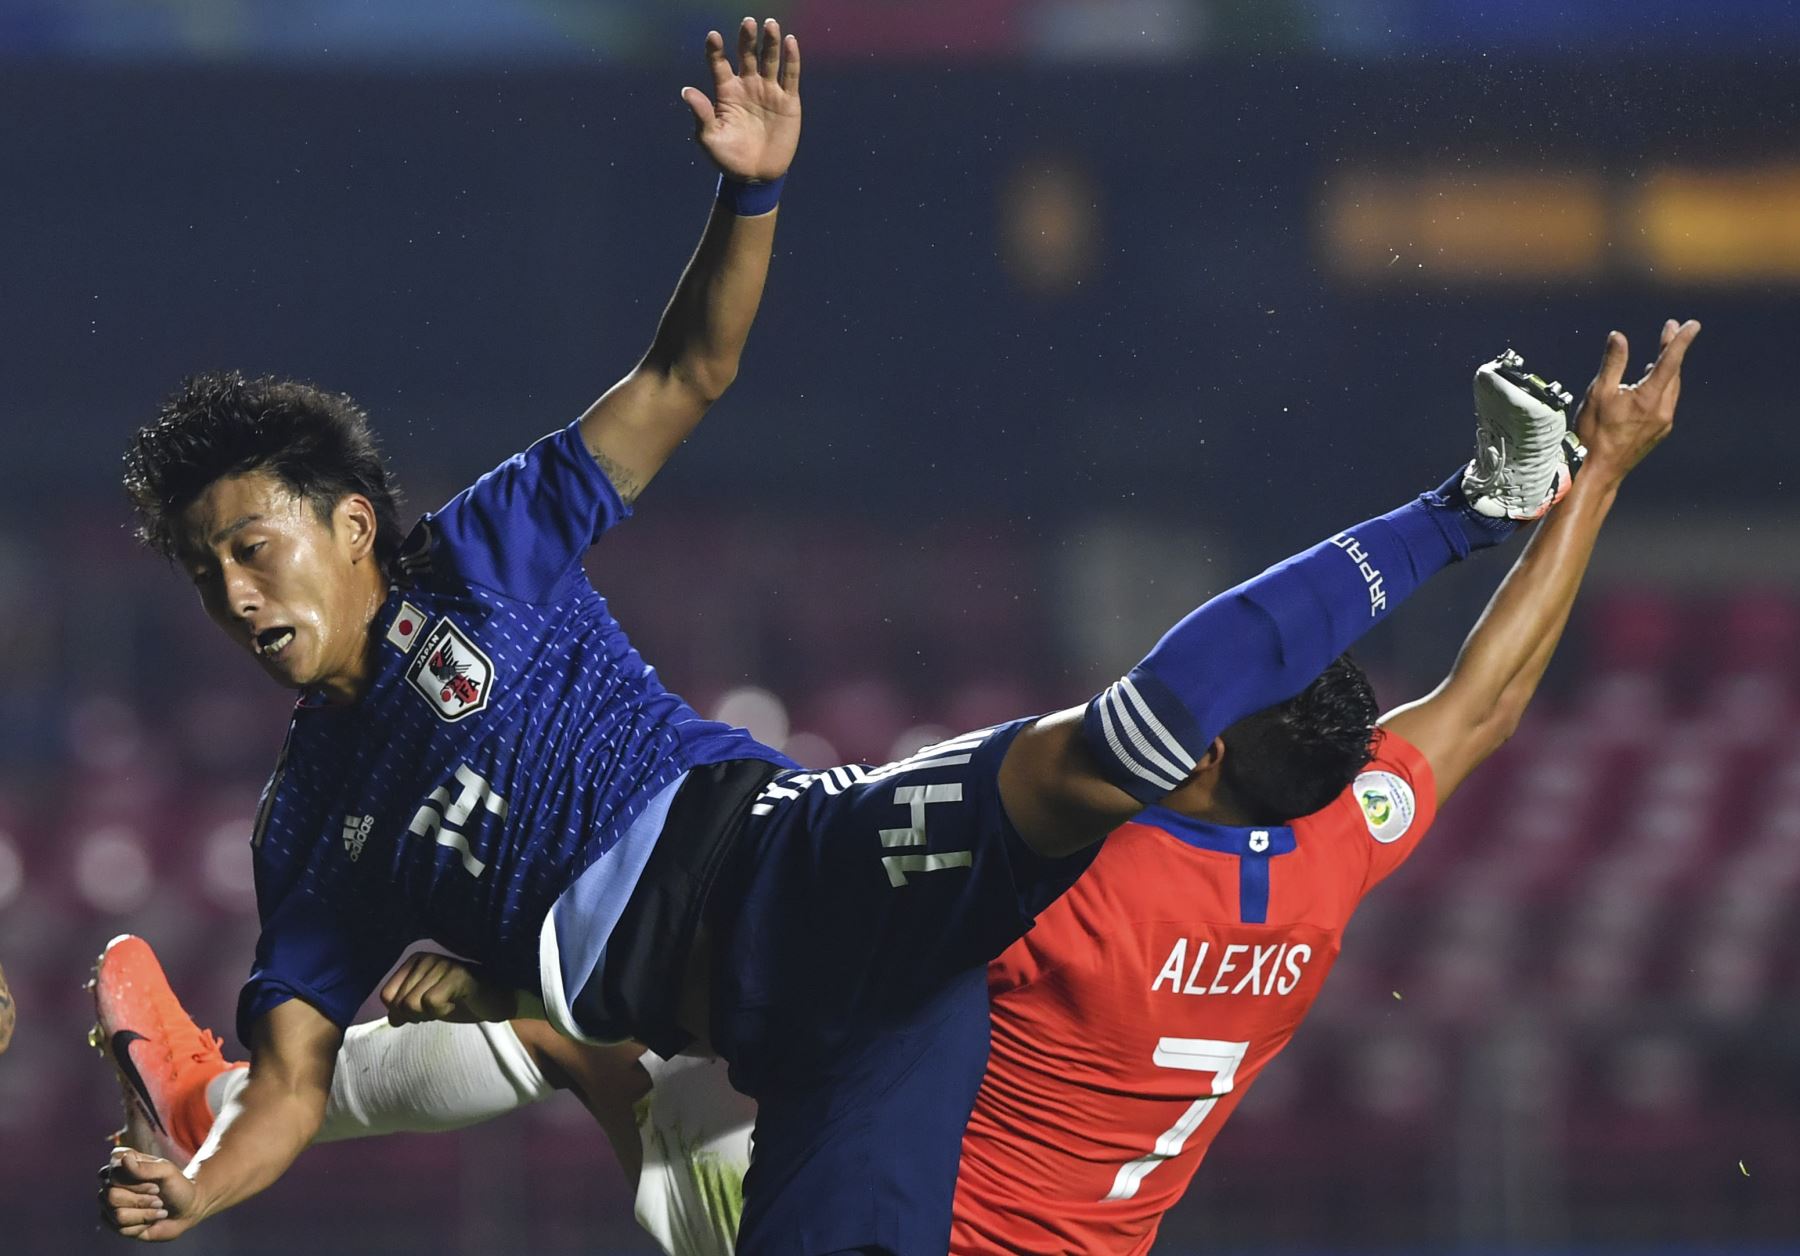 Teruki Hara (L), de Japón, y Alexis Sánchez, de Chile, saltan a la pelota durante un torneo de la Copa América, partido del Grupo C entre Chile y Japón en el Estadio Cicero Pompeu de Sao Paulo.
Foto: AFP